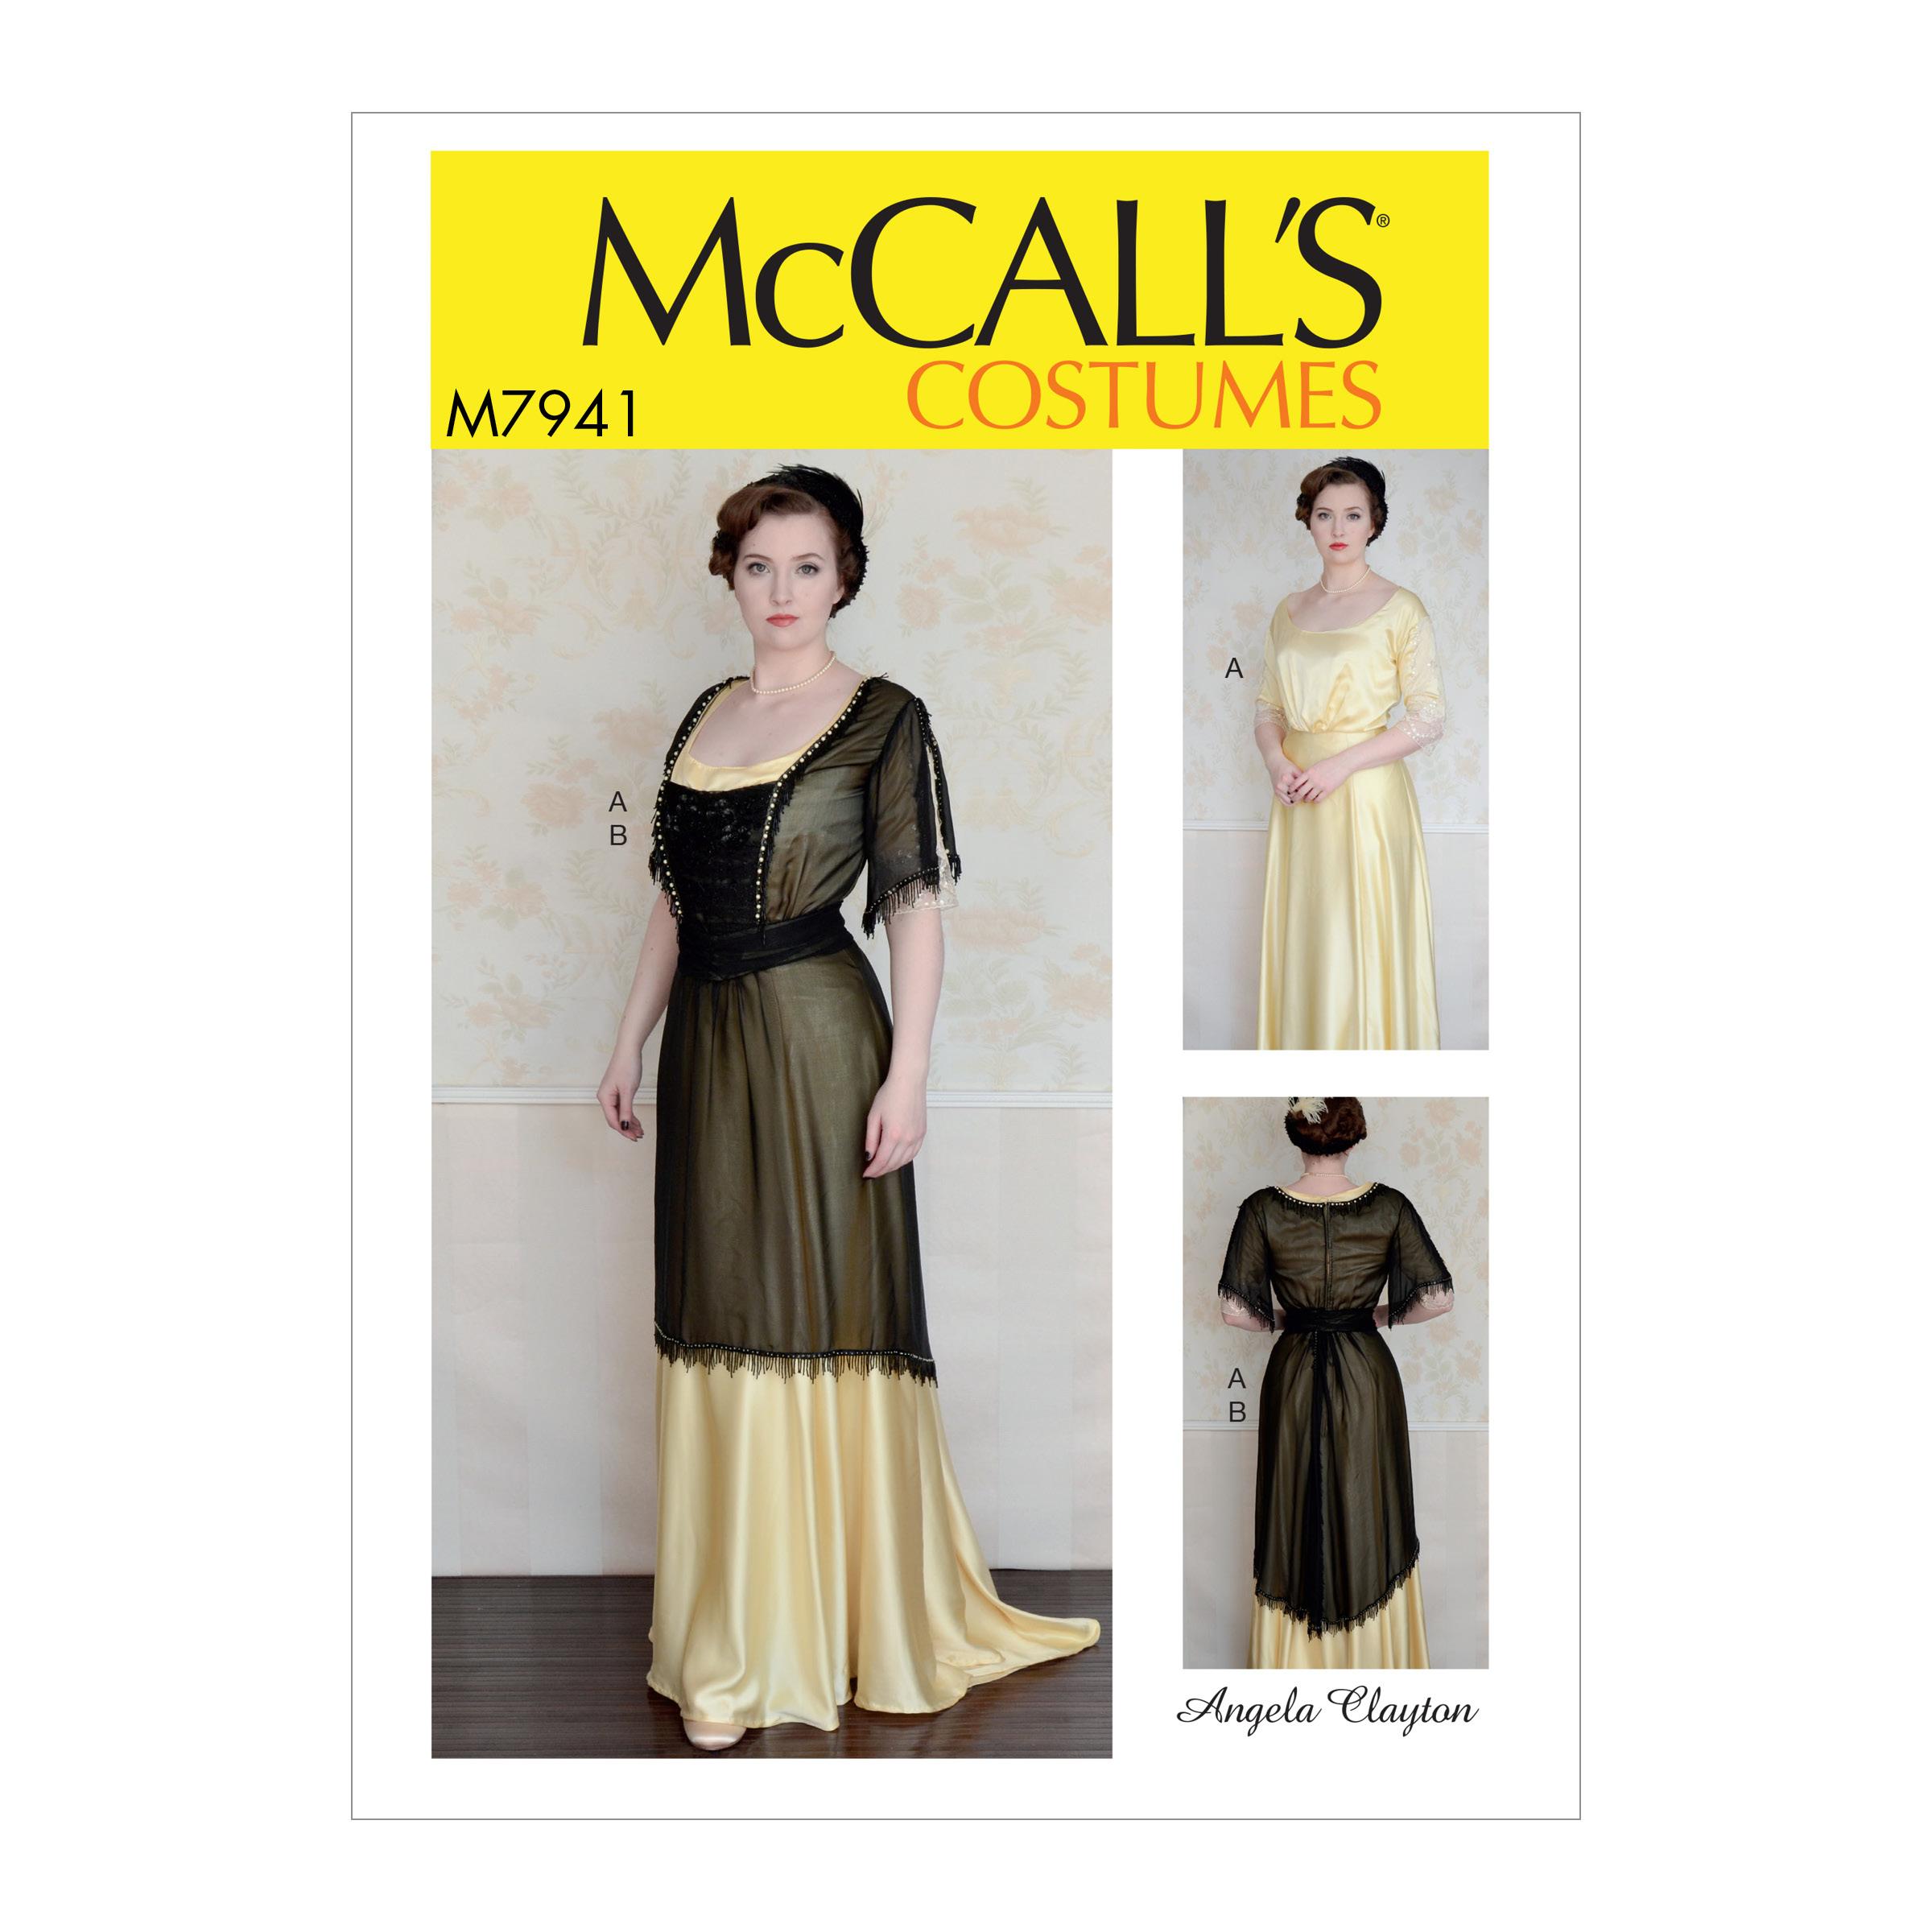 McCalls M7941 Costumes